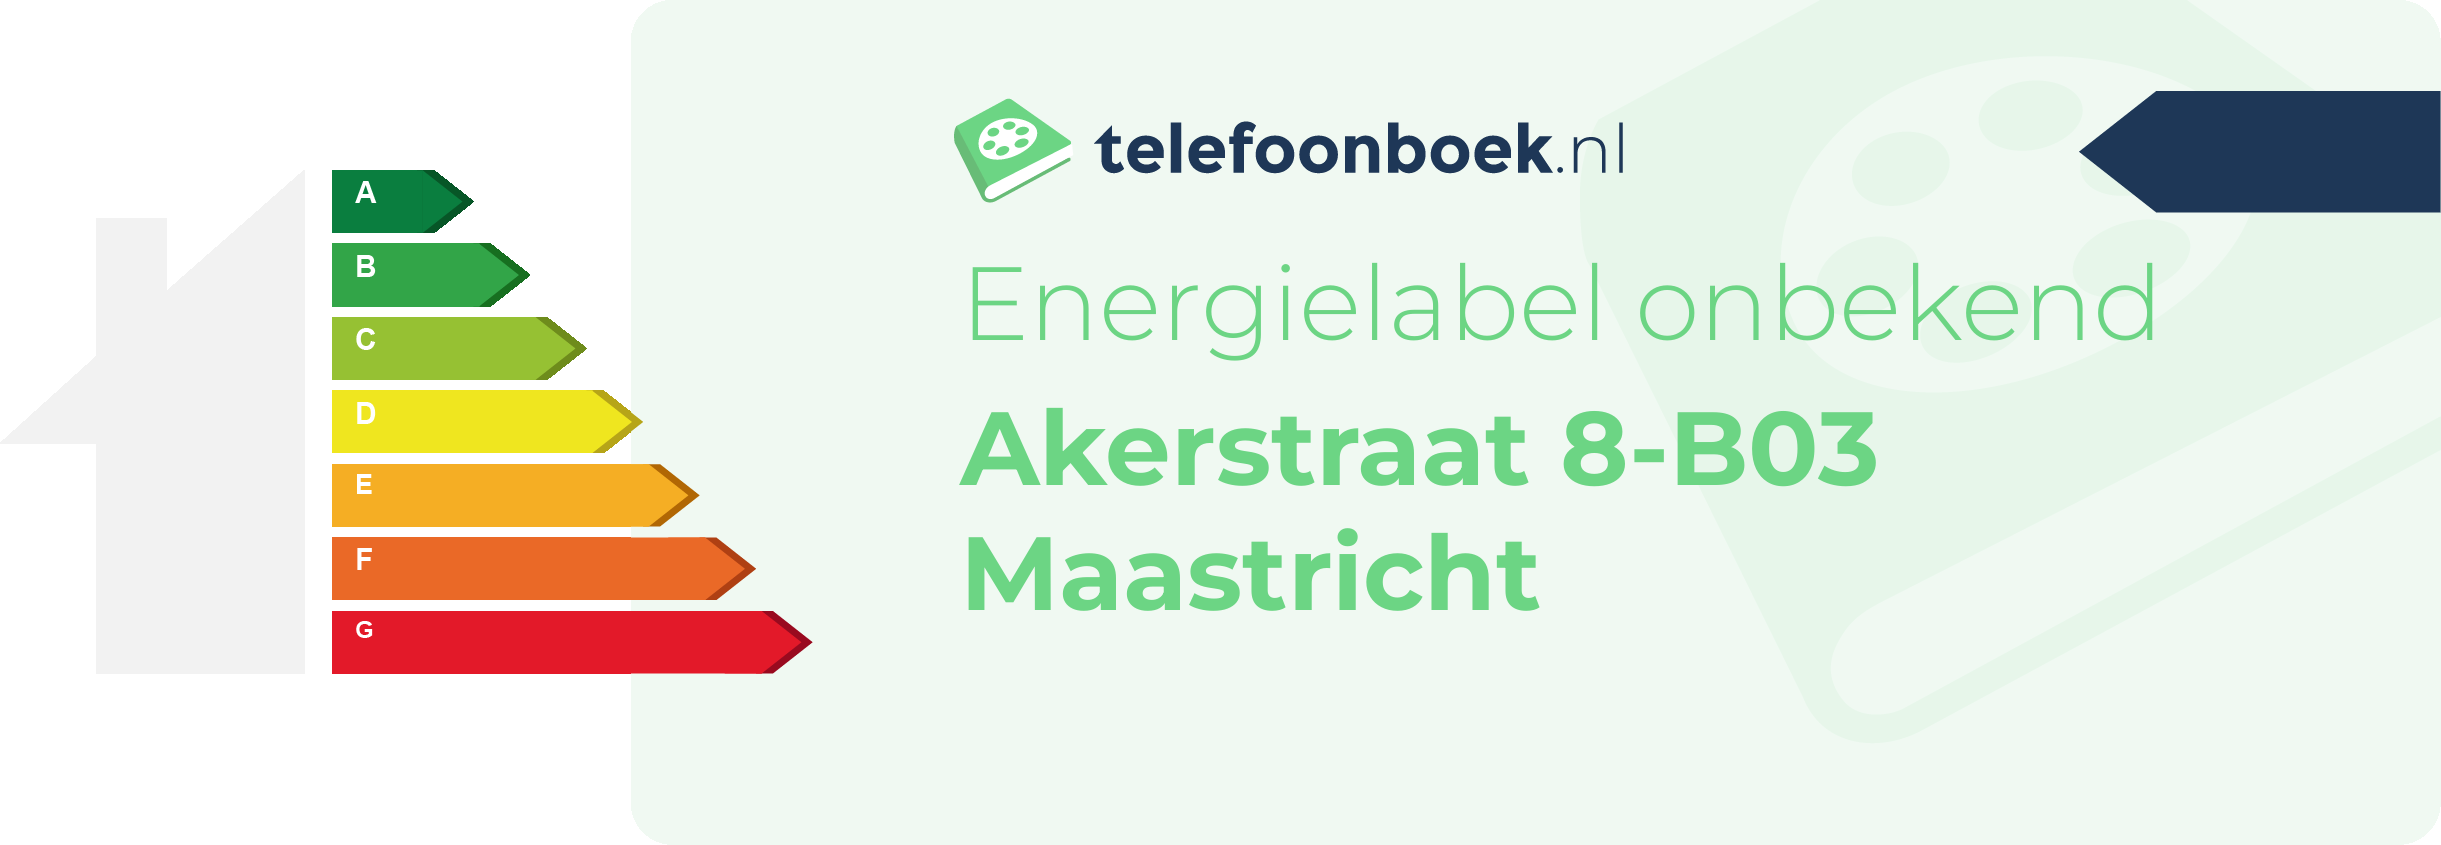 Energielabel Akerstraat 8-B03 Maastricht